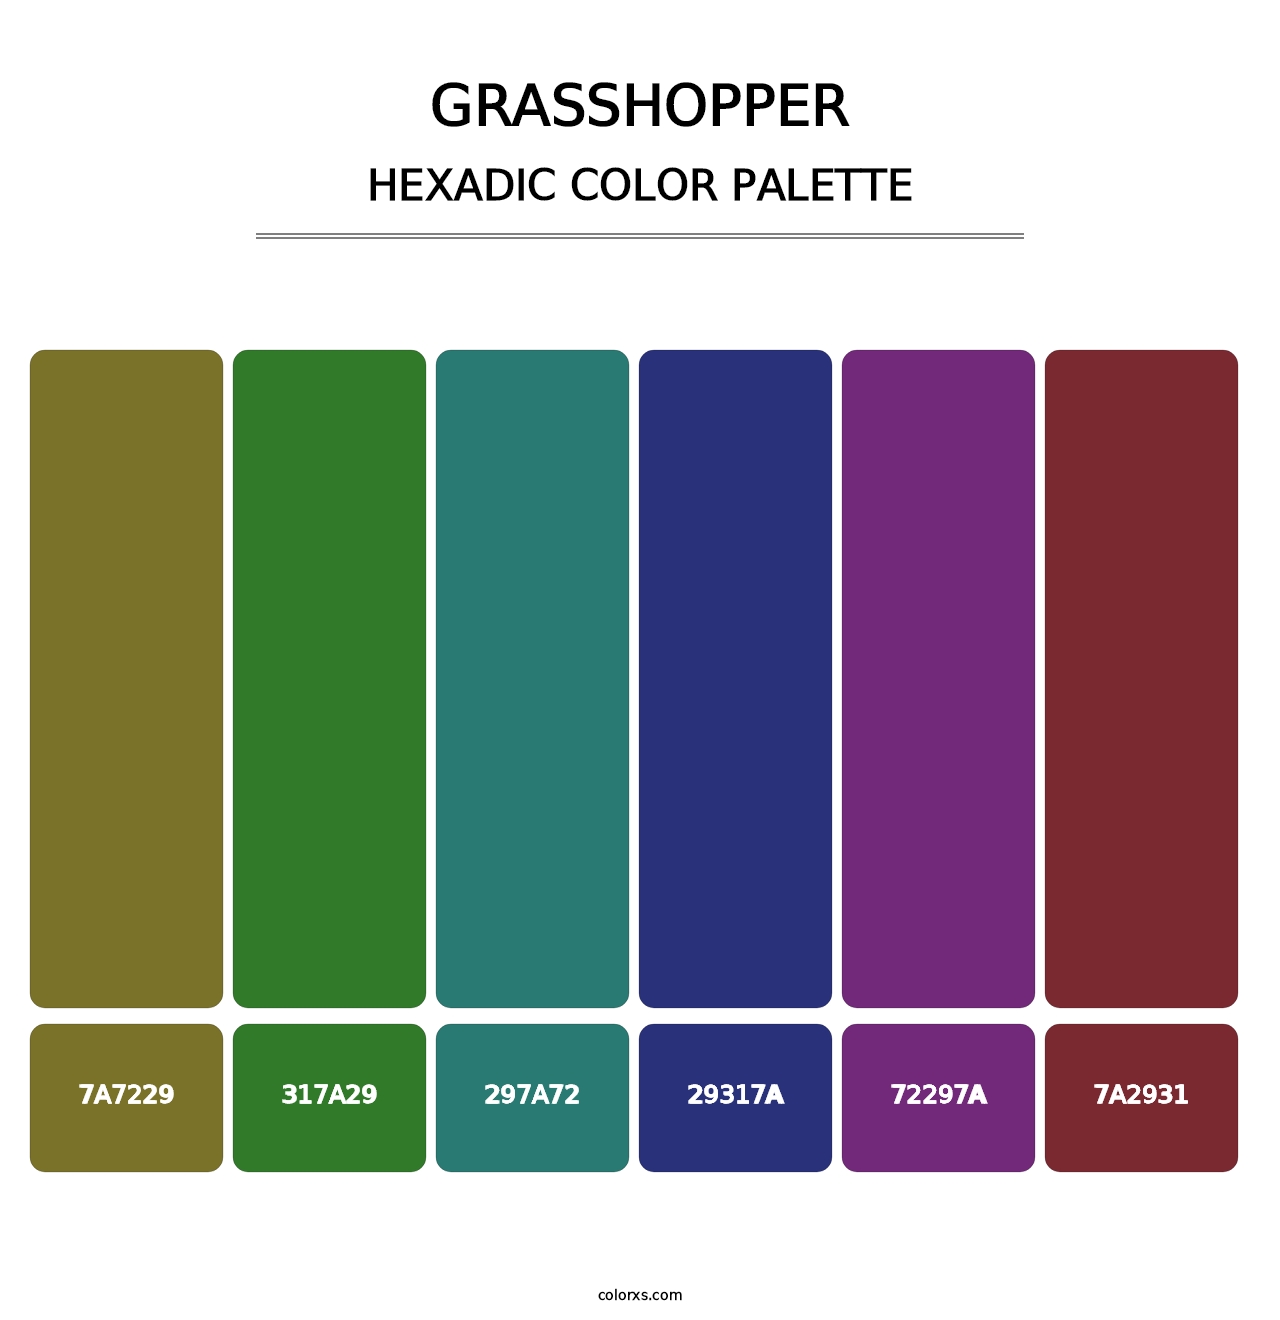 Grasshopper - Hexadic Color Palette